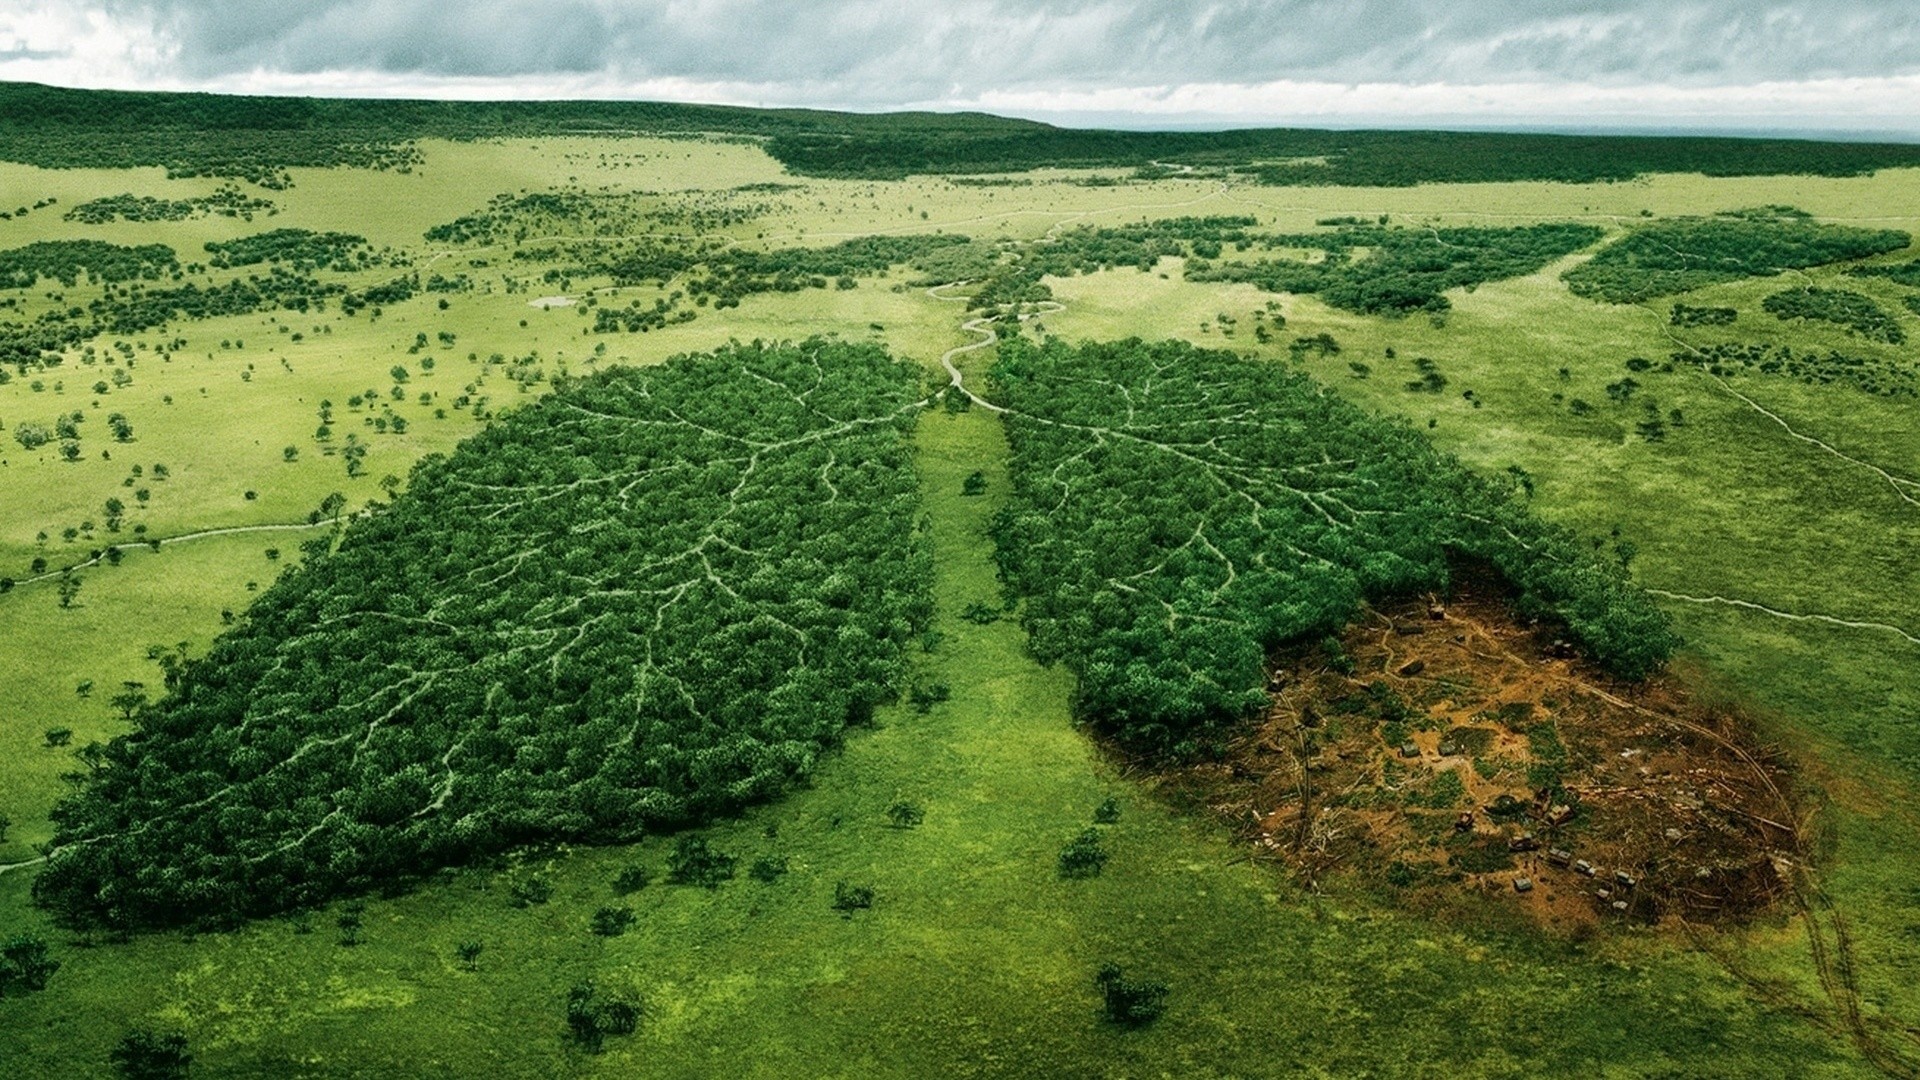 عکس پروفایل تماشایی حمایت از محیط زیست با طرح جنگل و درختان ریه های زمین